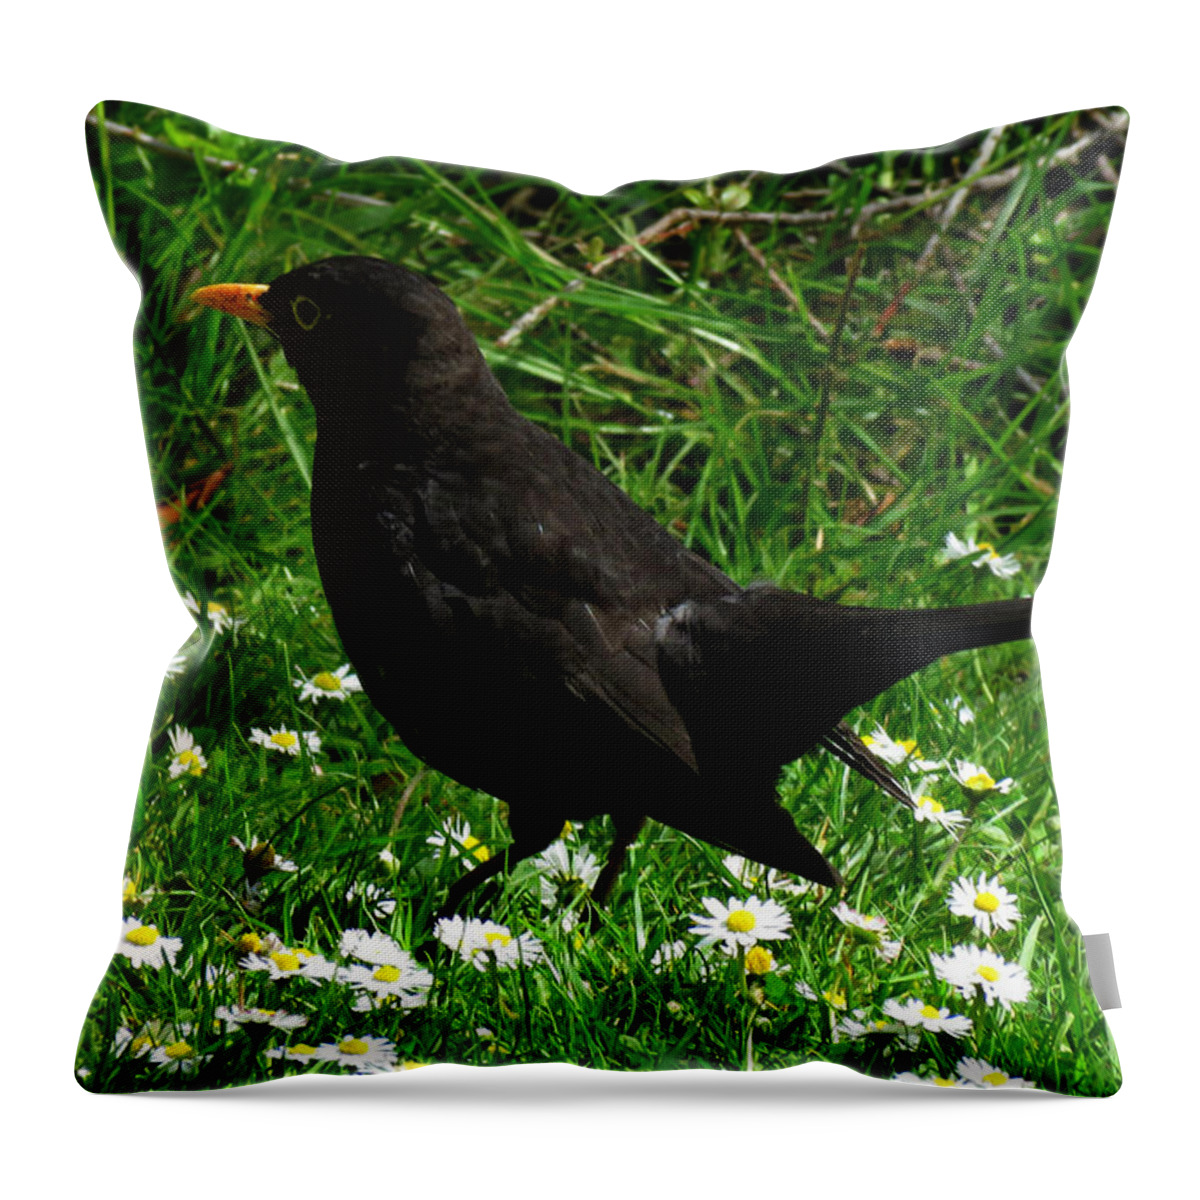 Blackbird Throw Pillow featuring the photograph Blackbird by John Topman